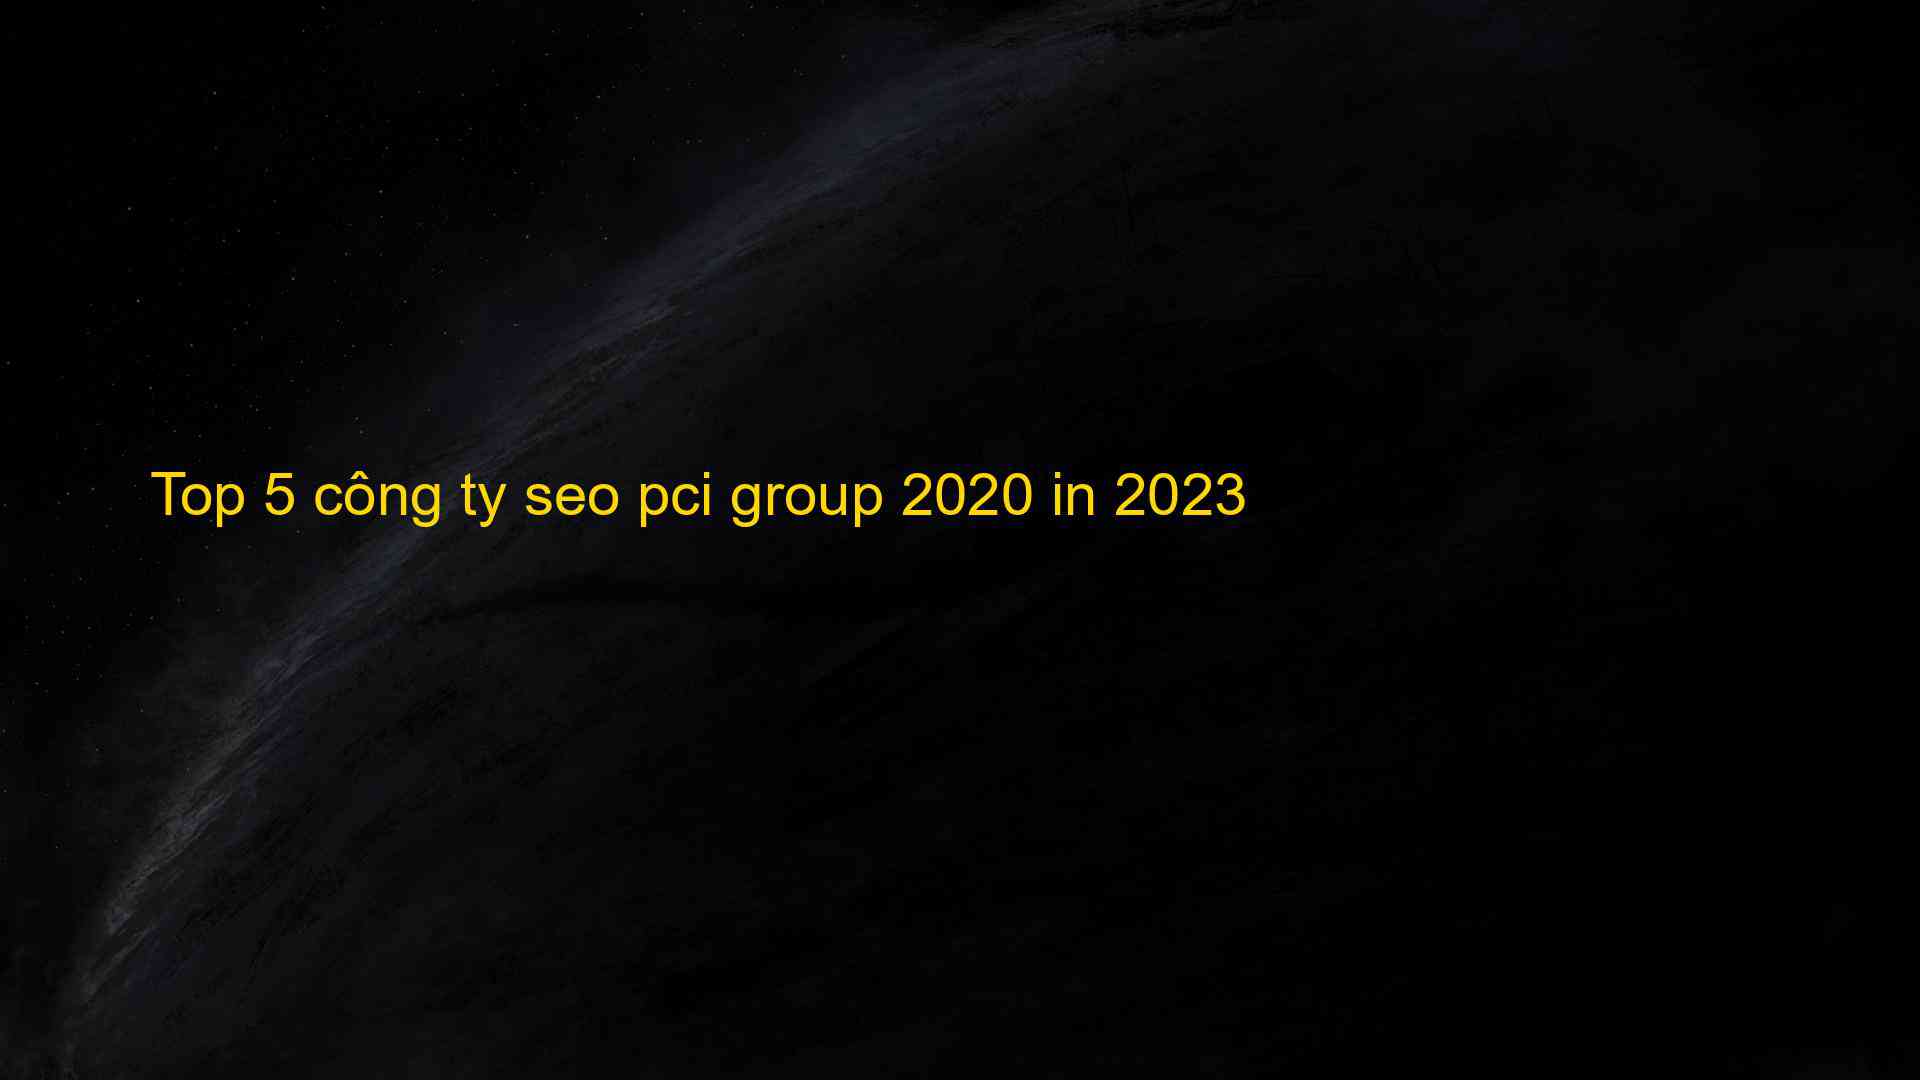 Top 5 Công Ty Seo Pci Group 2020 In 2023 - Chia Sẻ Kiến Thức Điện Máy Việt Nam